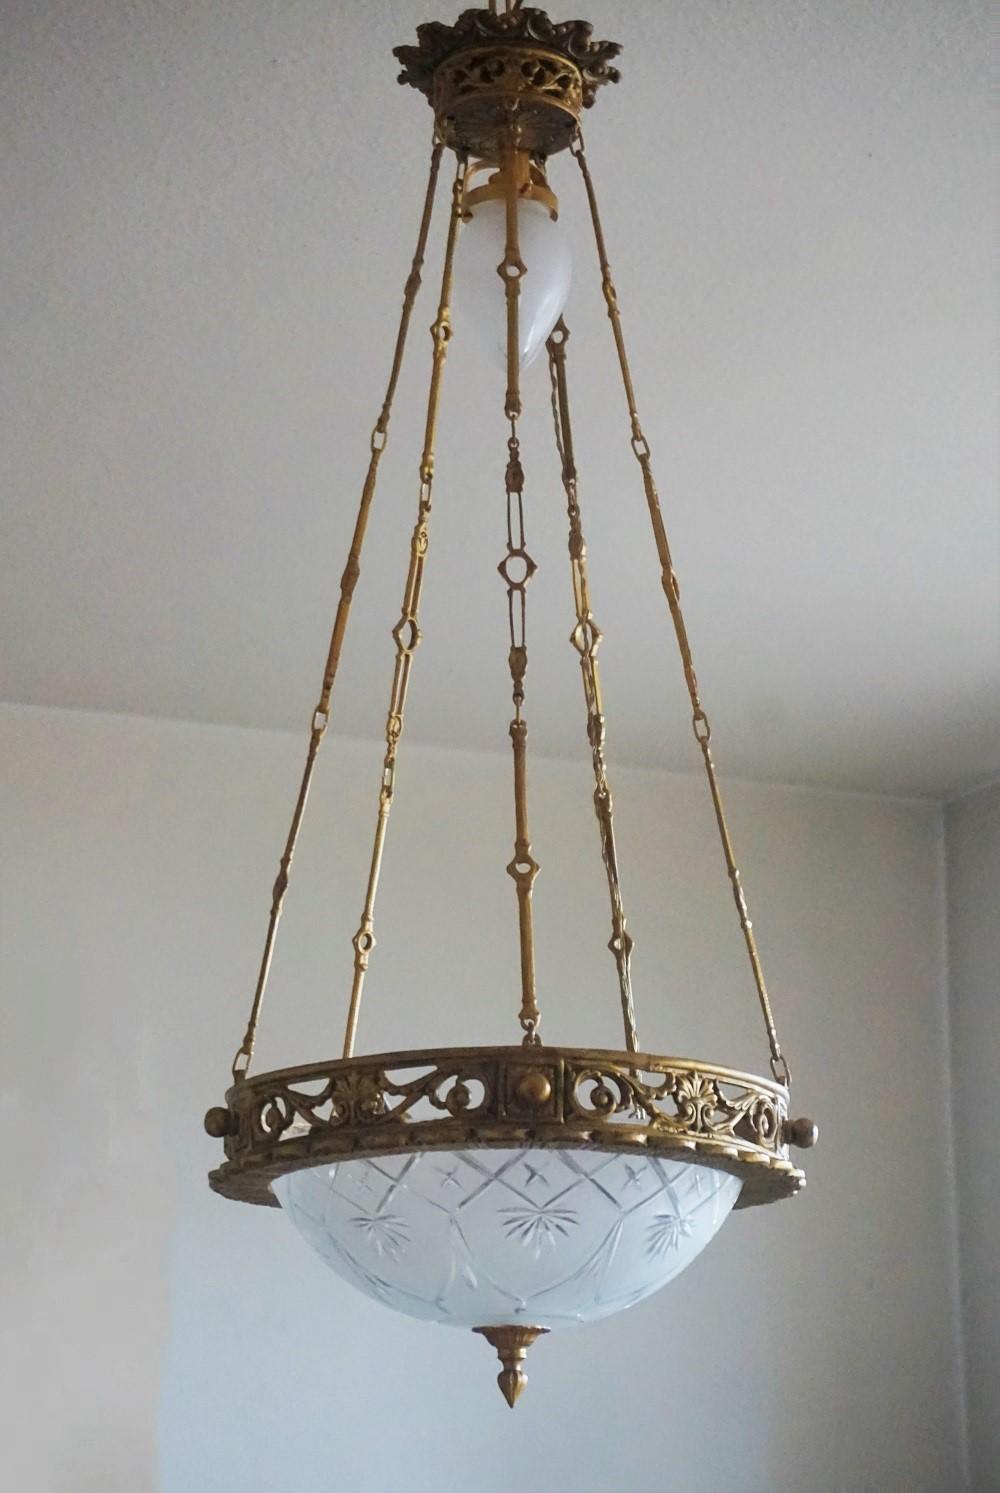 Magnifique lustre Art déco au design très élégant, en forme de couronne en bronze doré, avec un abat-jour en verre satiné taillé à la main et un petit abat-jour suspendu au sommet, le tout soutenu par cinq chaînes en bronze reliées à un baldaquin